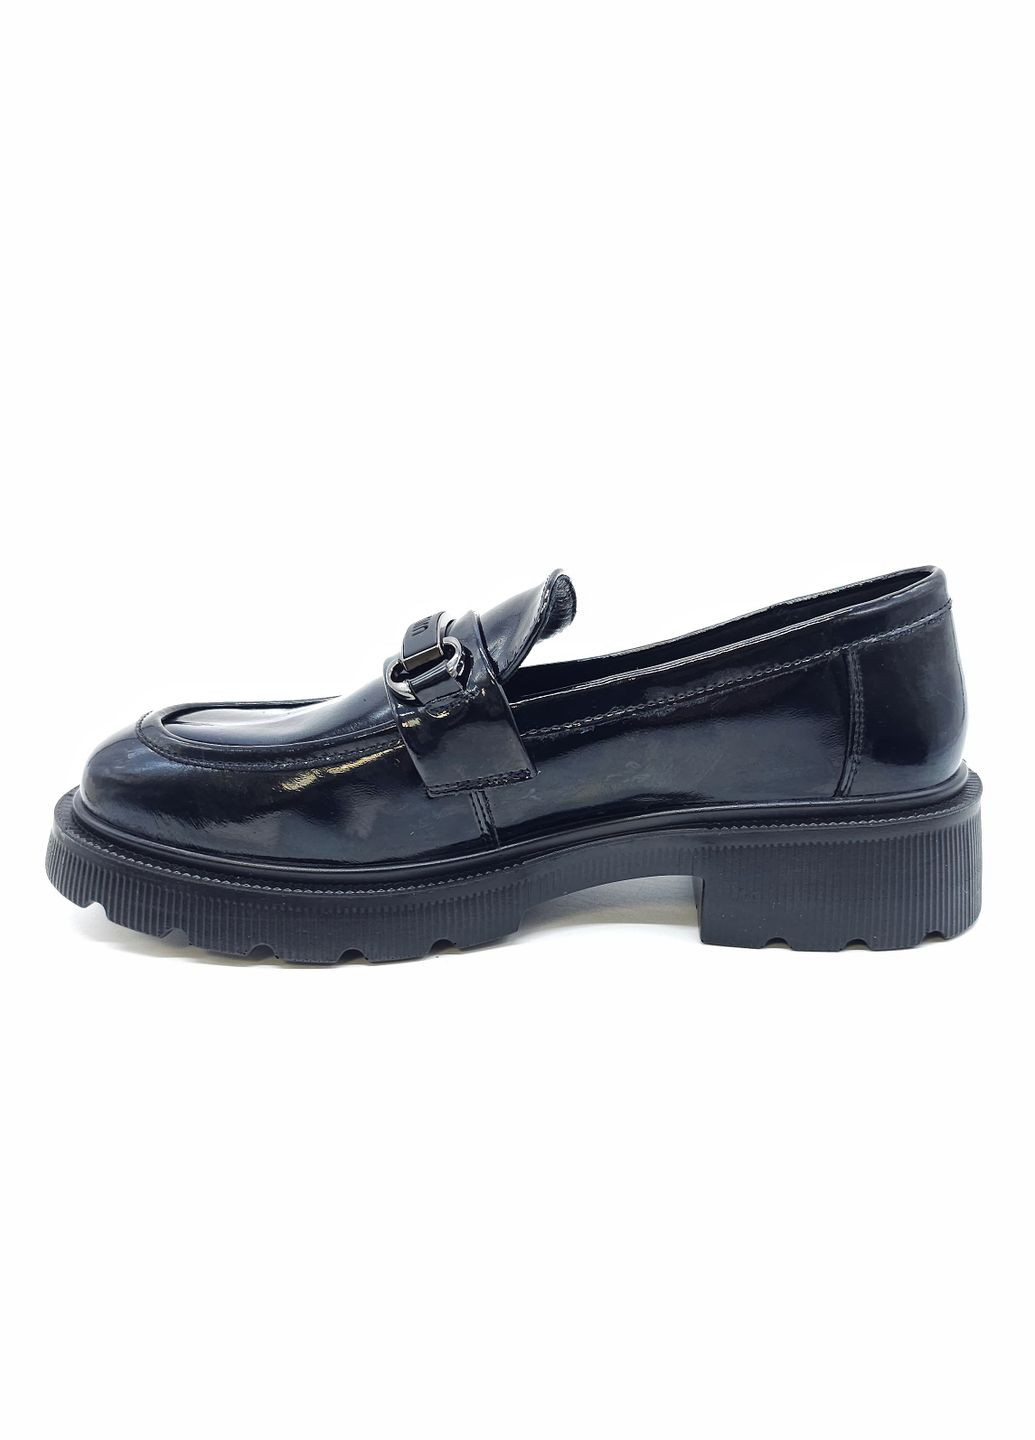 Жіночі туфлі чорні лакована шкіра PP-19-14 23 см (р) PL PS (278551651)